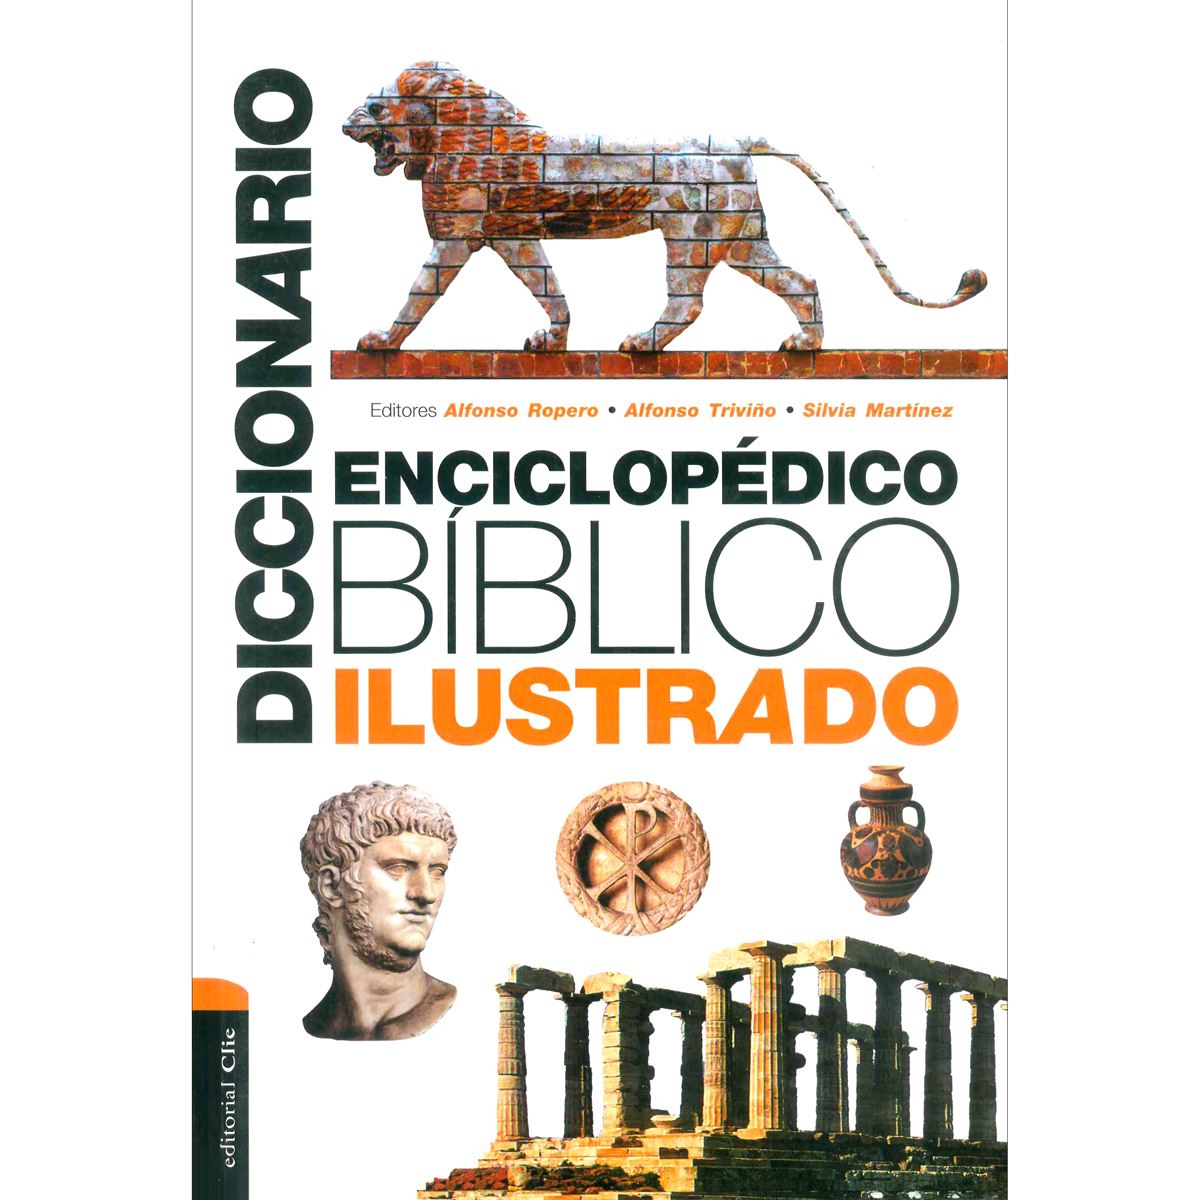 Diccionario enciclopedico biblico ilustrado